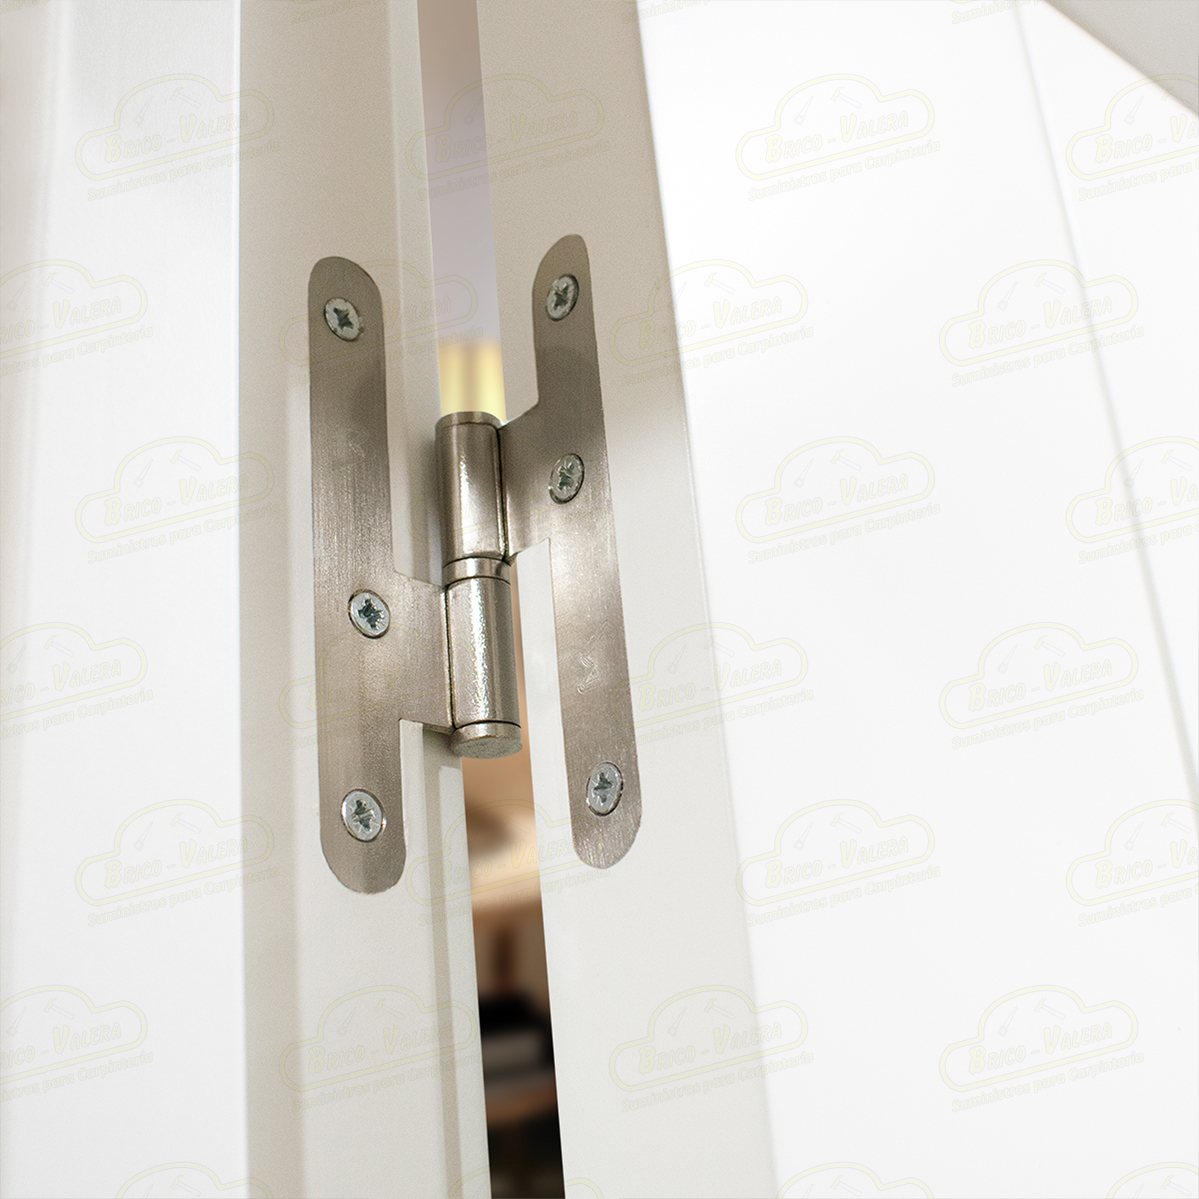 Puerta Premium Aranjuez-V2 Lacada Blanca con Manillas Doradas de Interior en Block (Maciza)